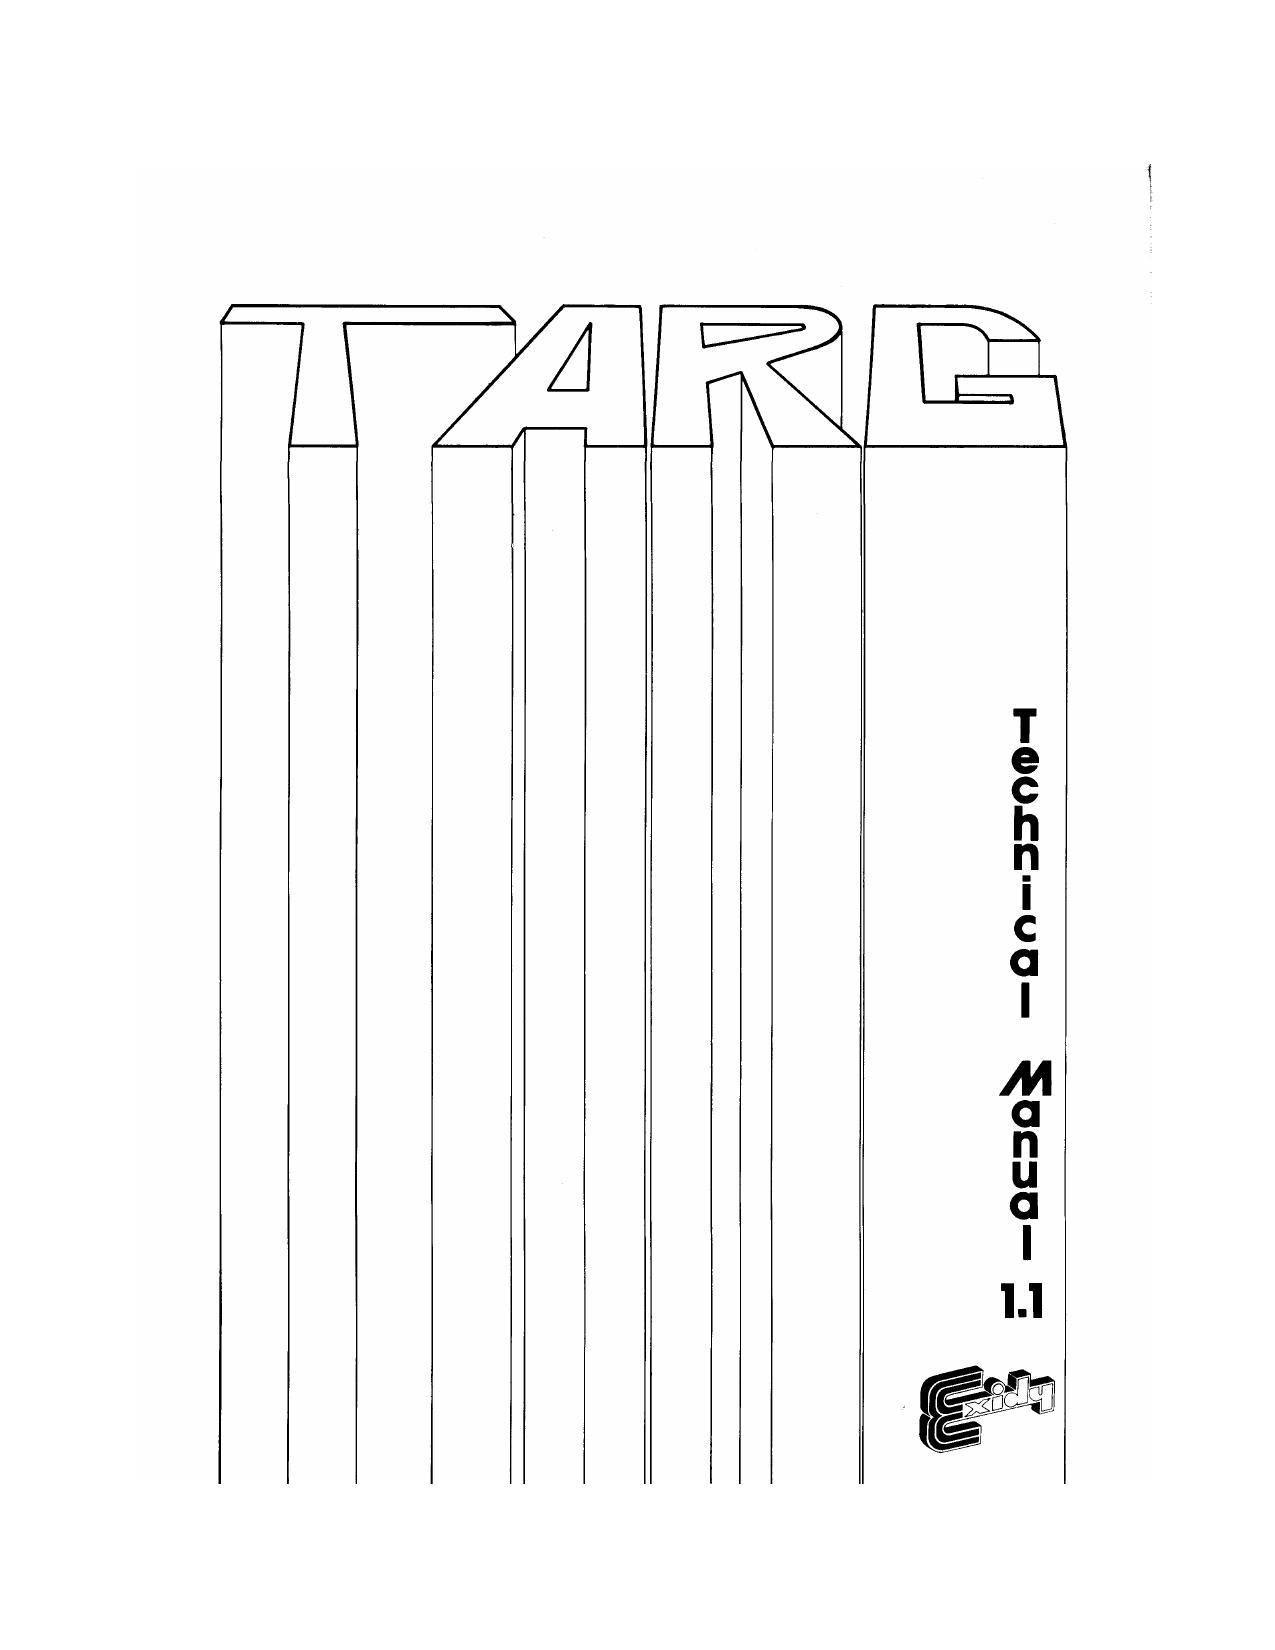 Targ Technical Manual V1.1